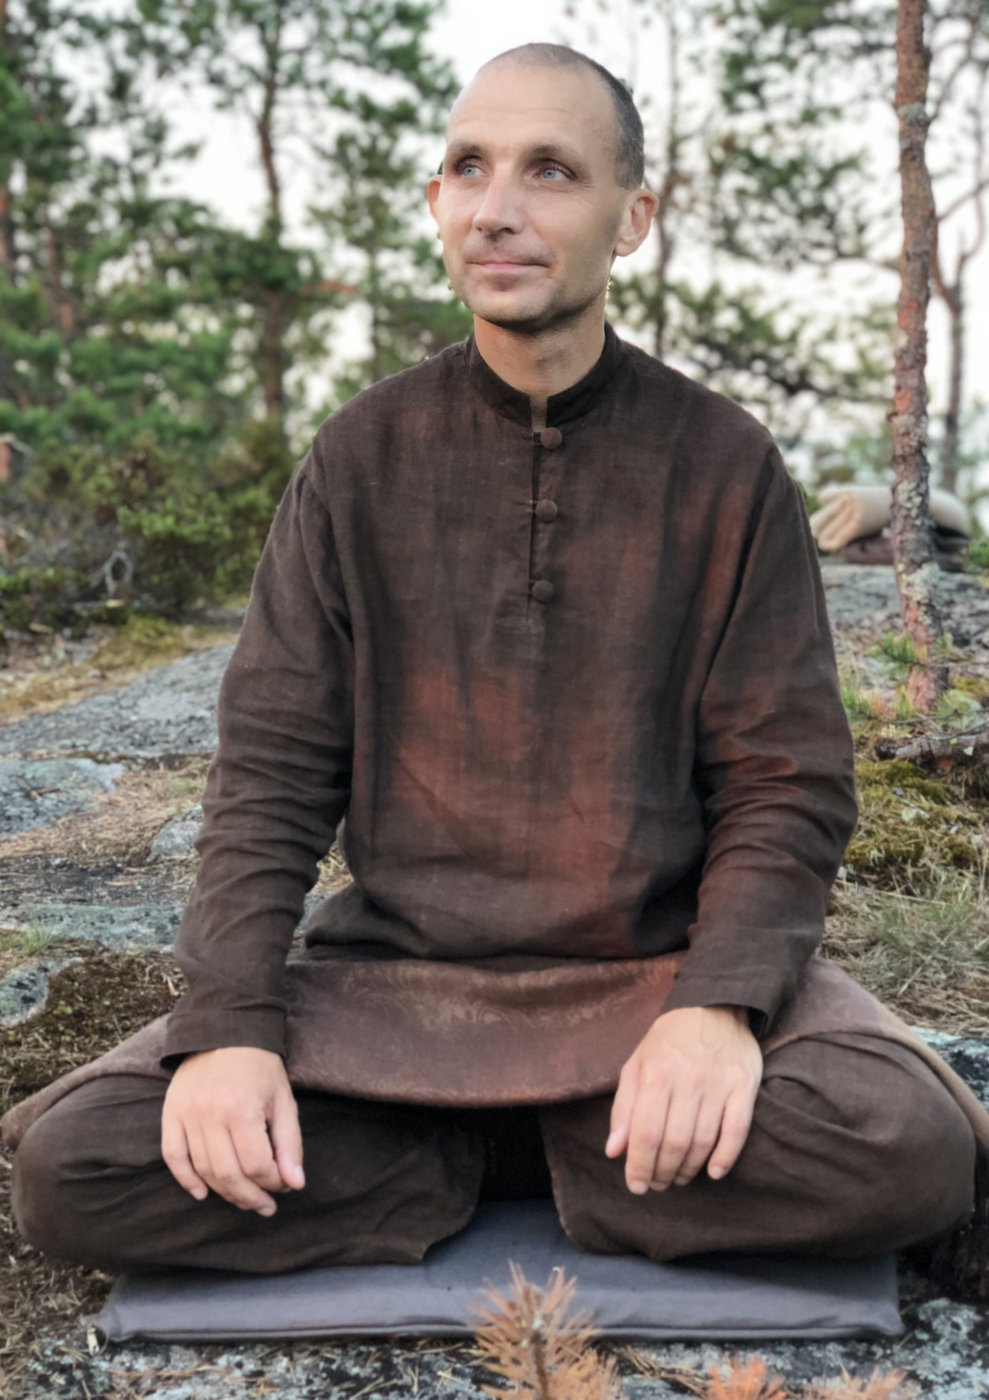 Аджан Хуберт, медитация, ретриты, випассана, обучение медитации, буддизм, духовная практика, онлайн-ретрит, ритрит, буддийский учитель